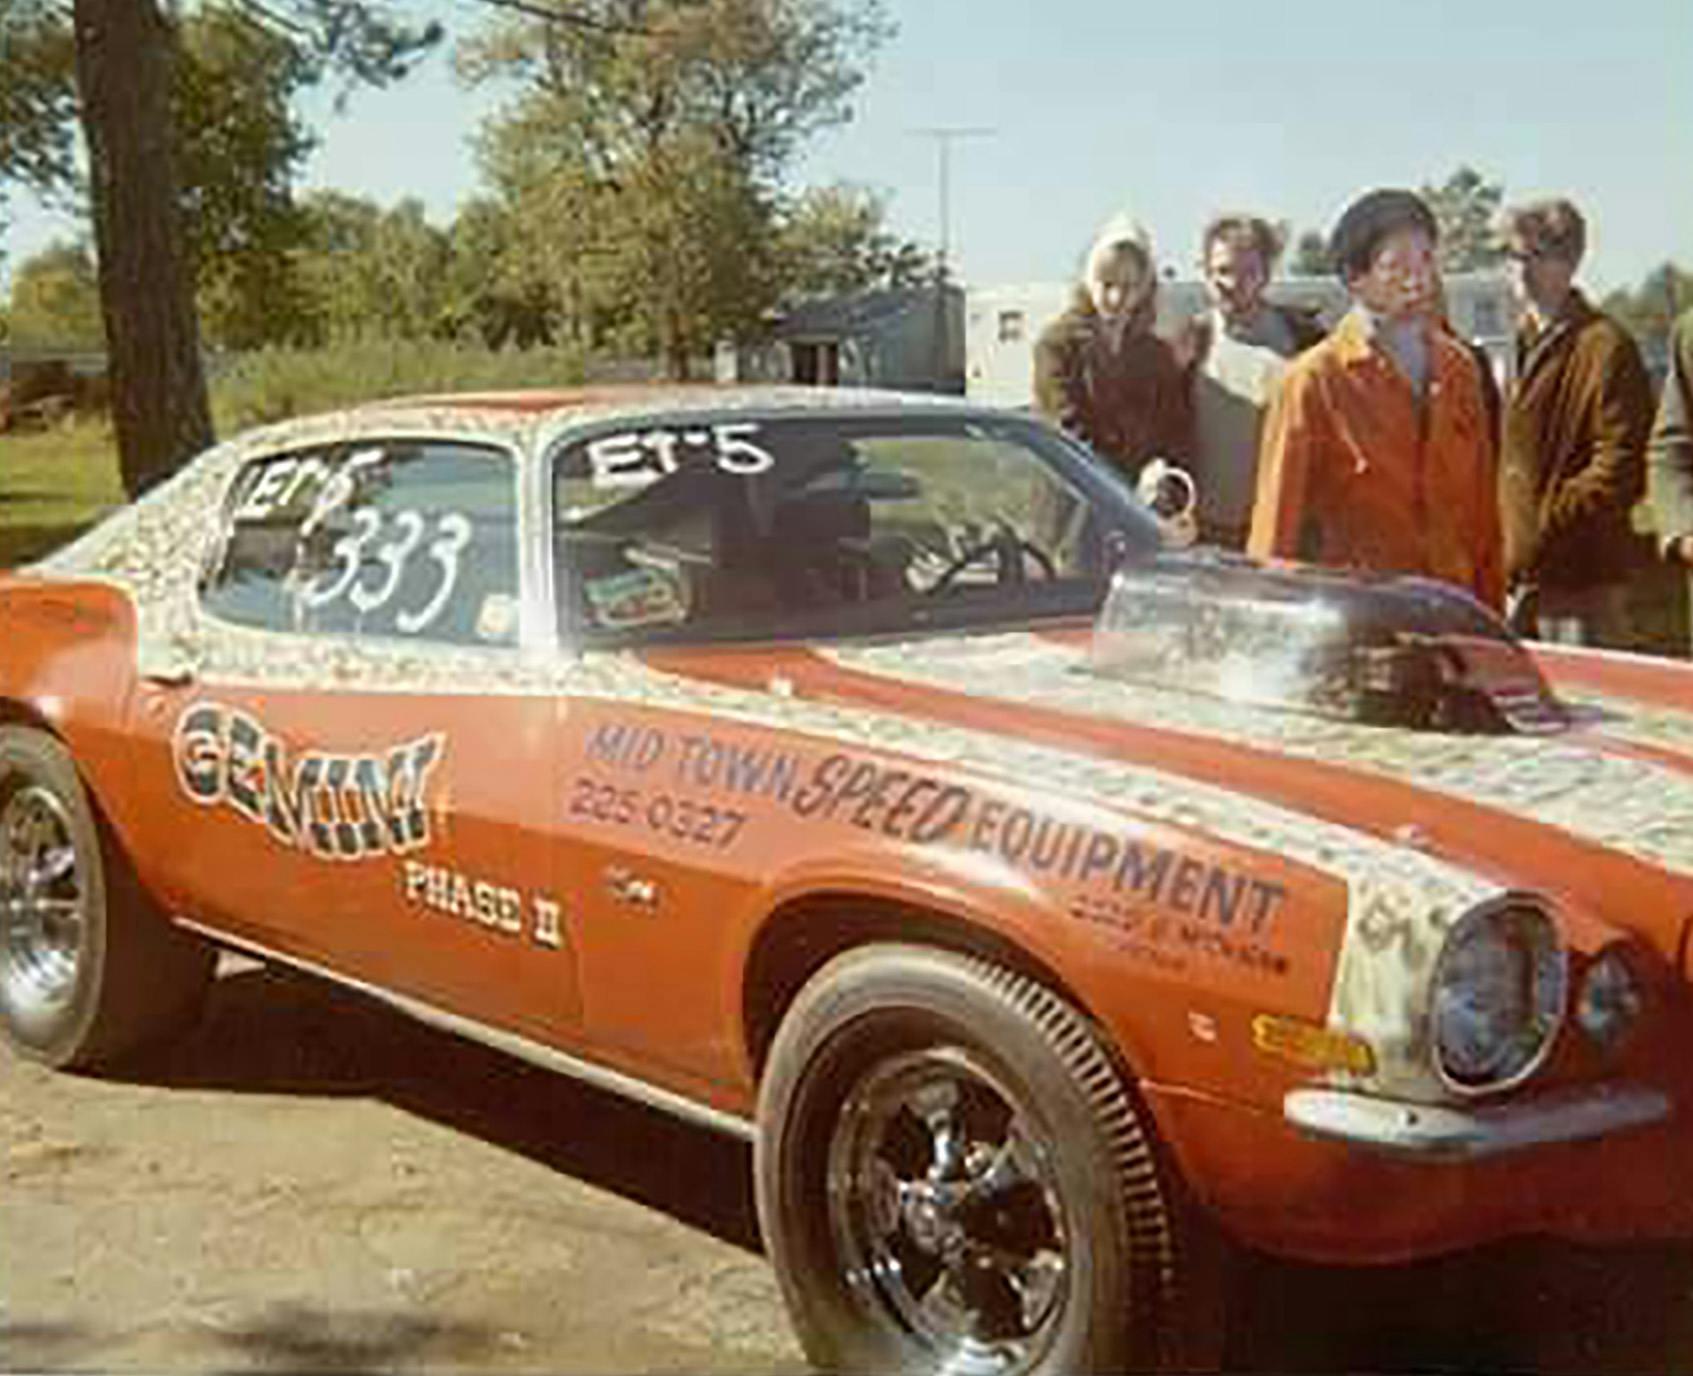 Edward Riley 1970 Camaro race car